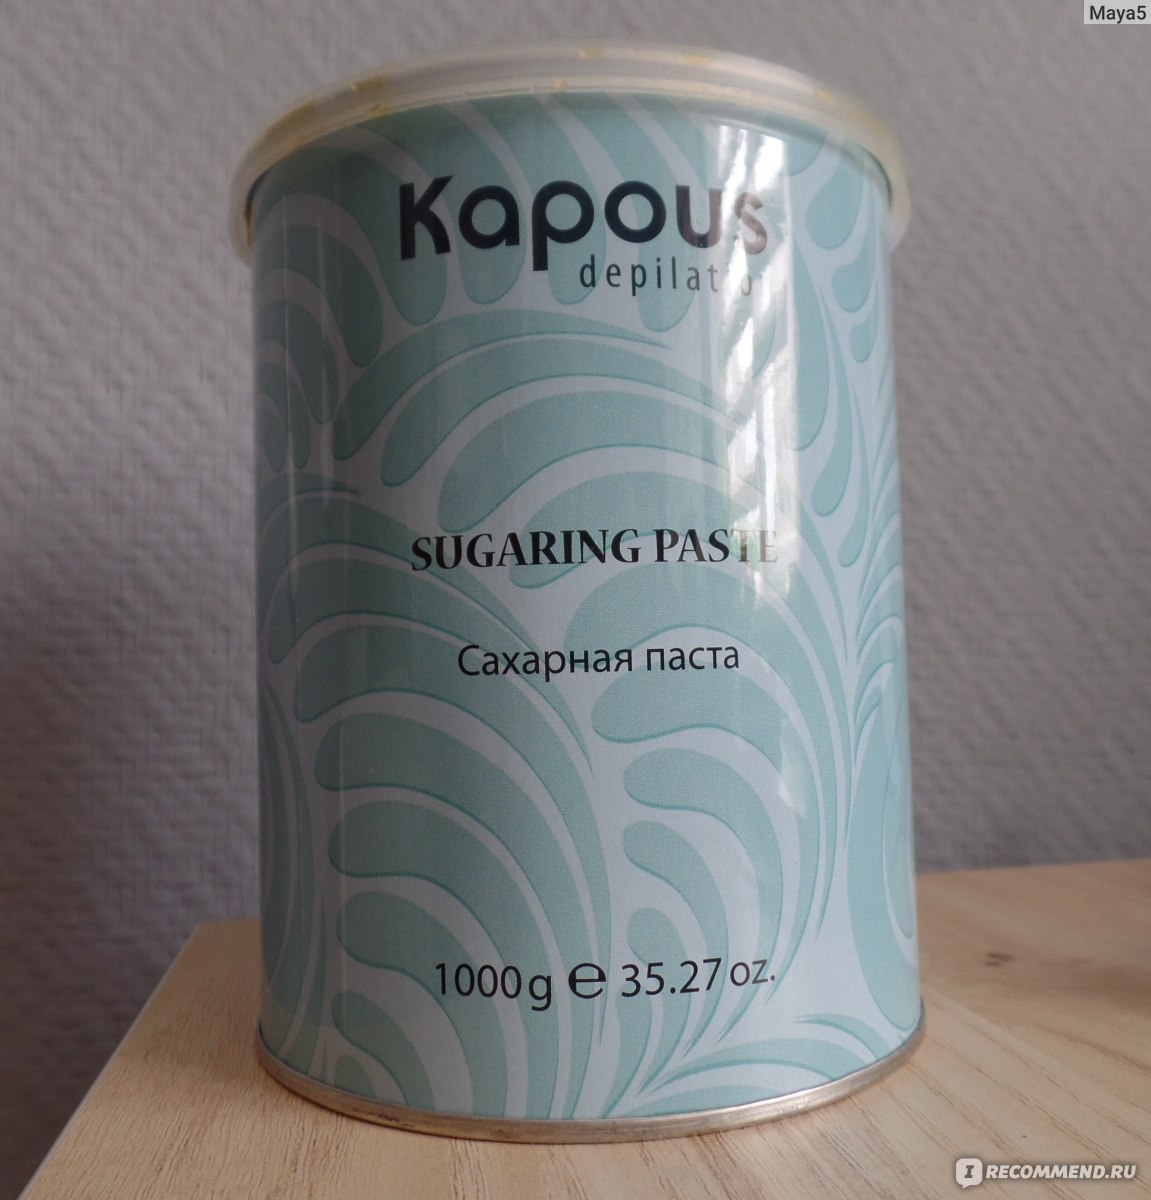 Как пользоваться сахарной пастой для депиляции в домашних условиях kapous